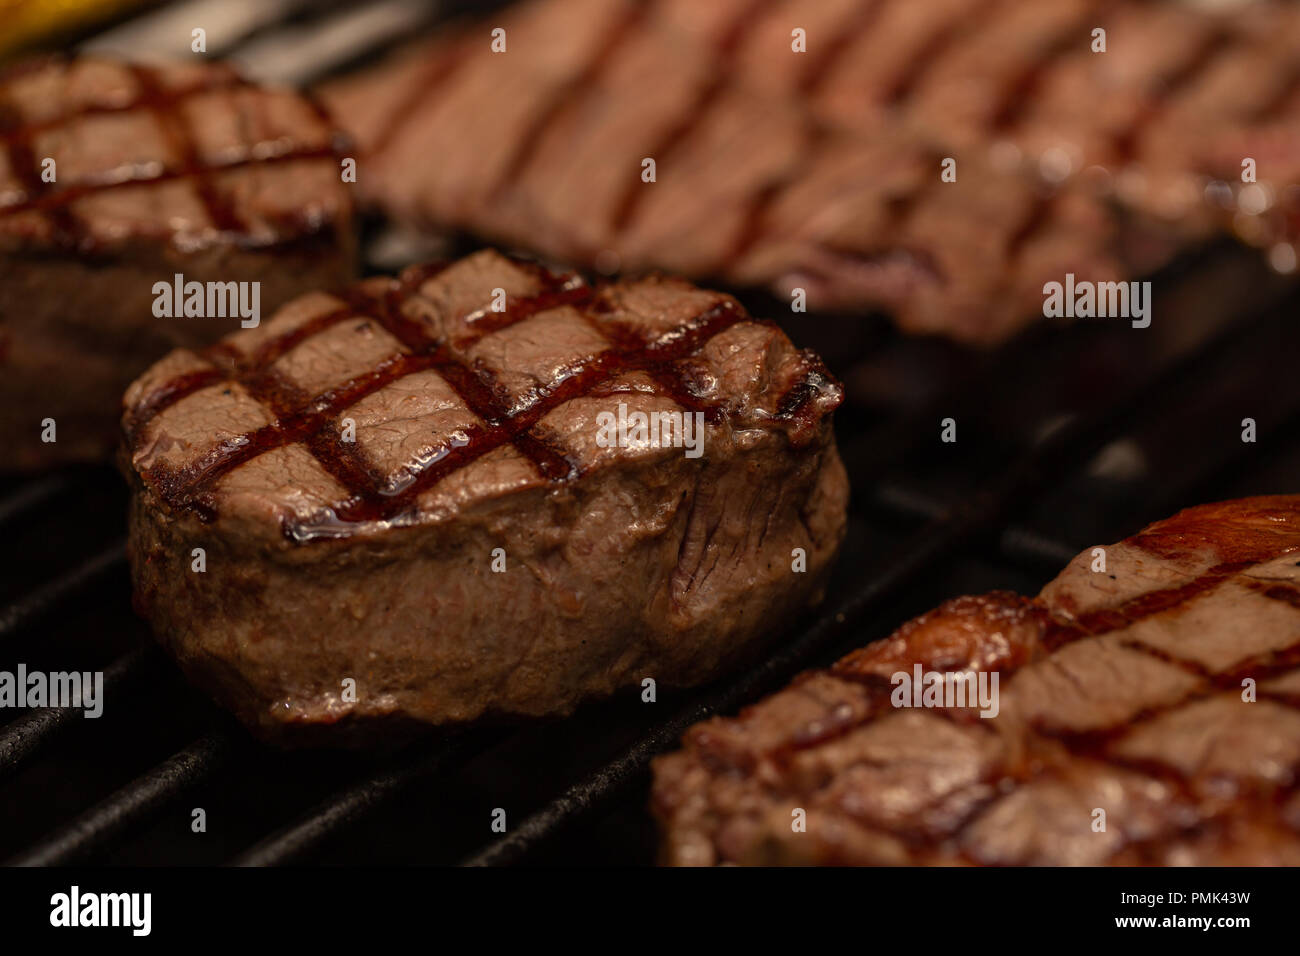 Drei gegrilltes Rinderfilet Steaks beschichtet Speck auf Grill. Makro.  Prozess der Zubereitung von Fleisch Stockfotografie - Alamy